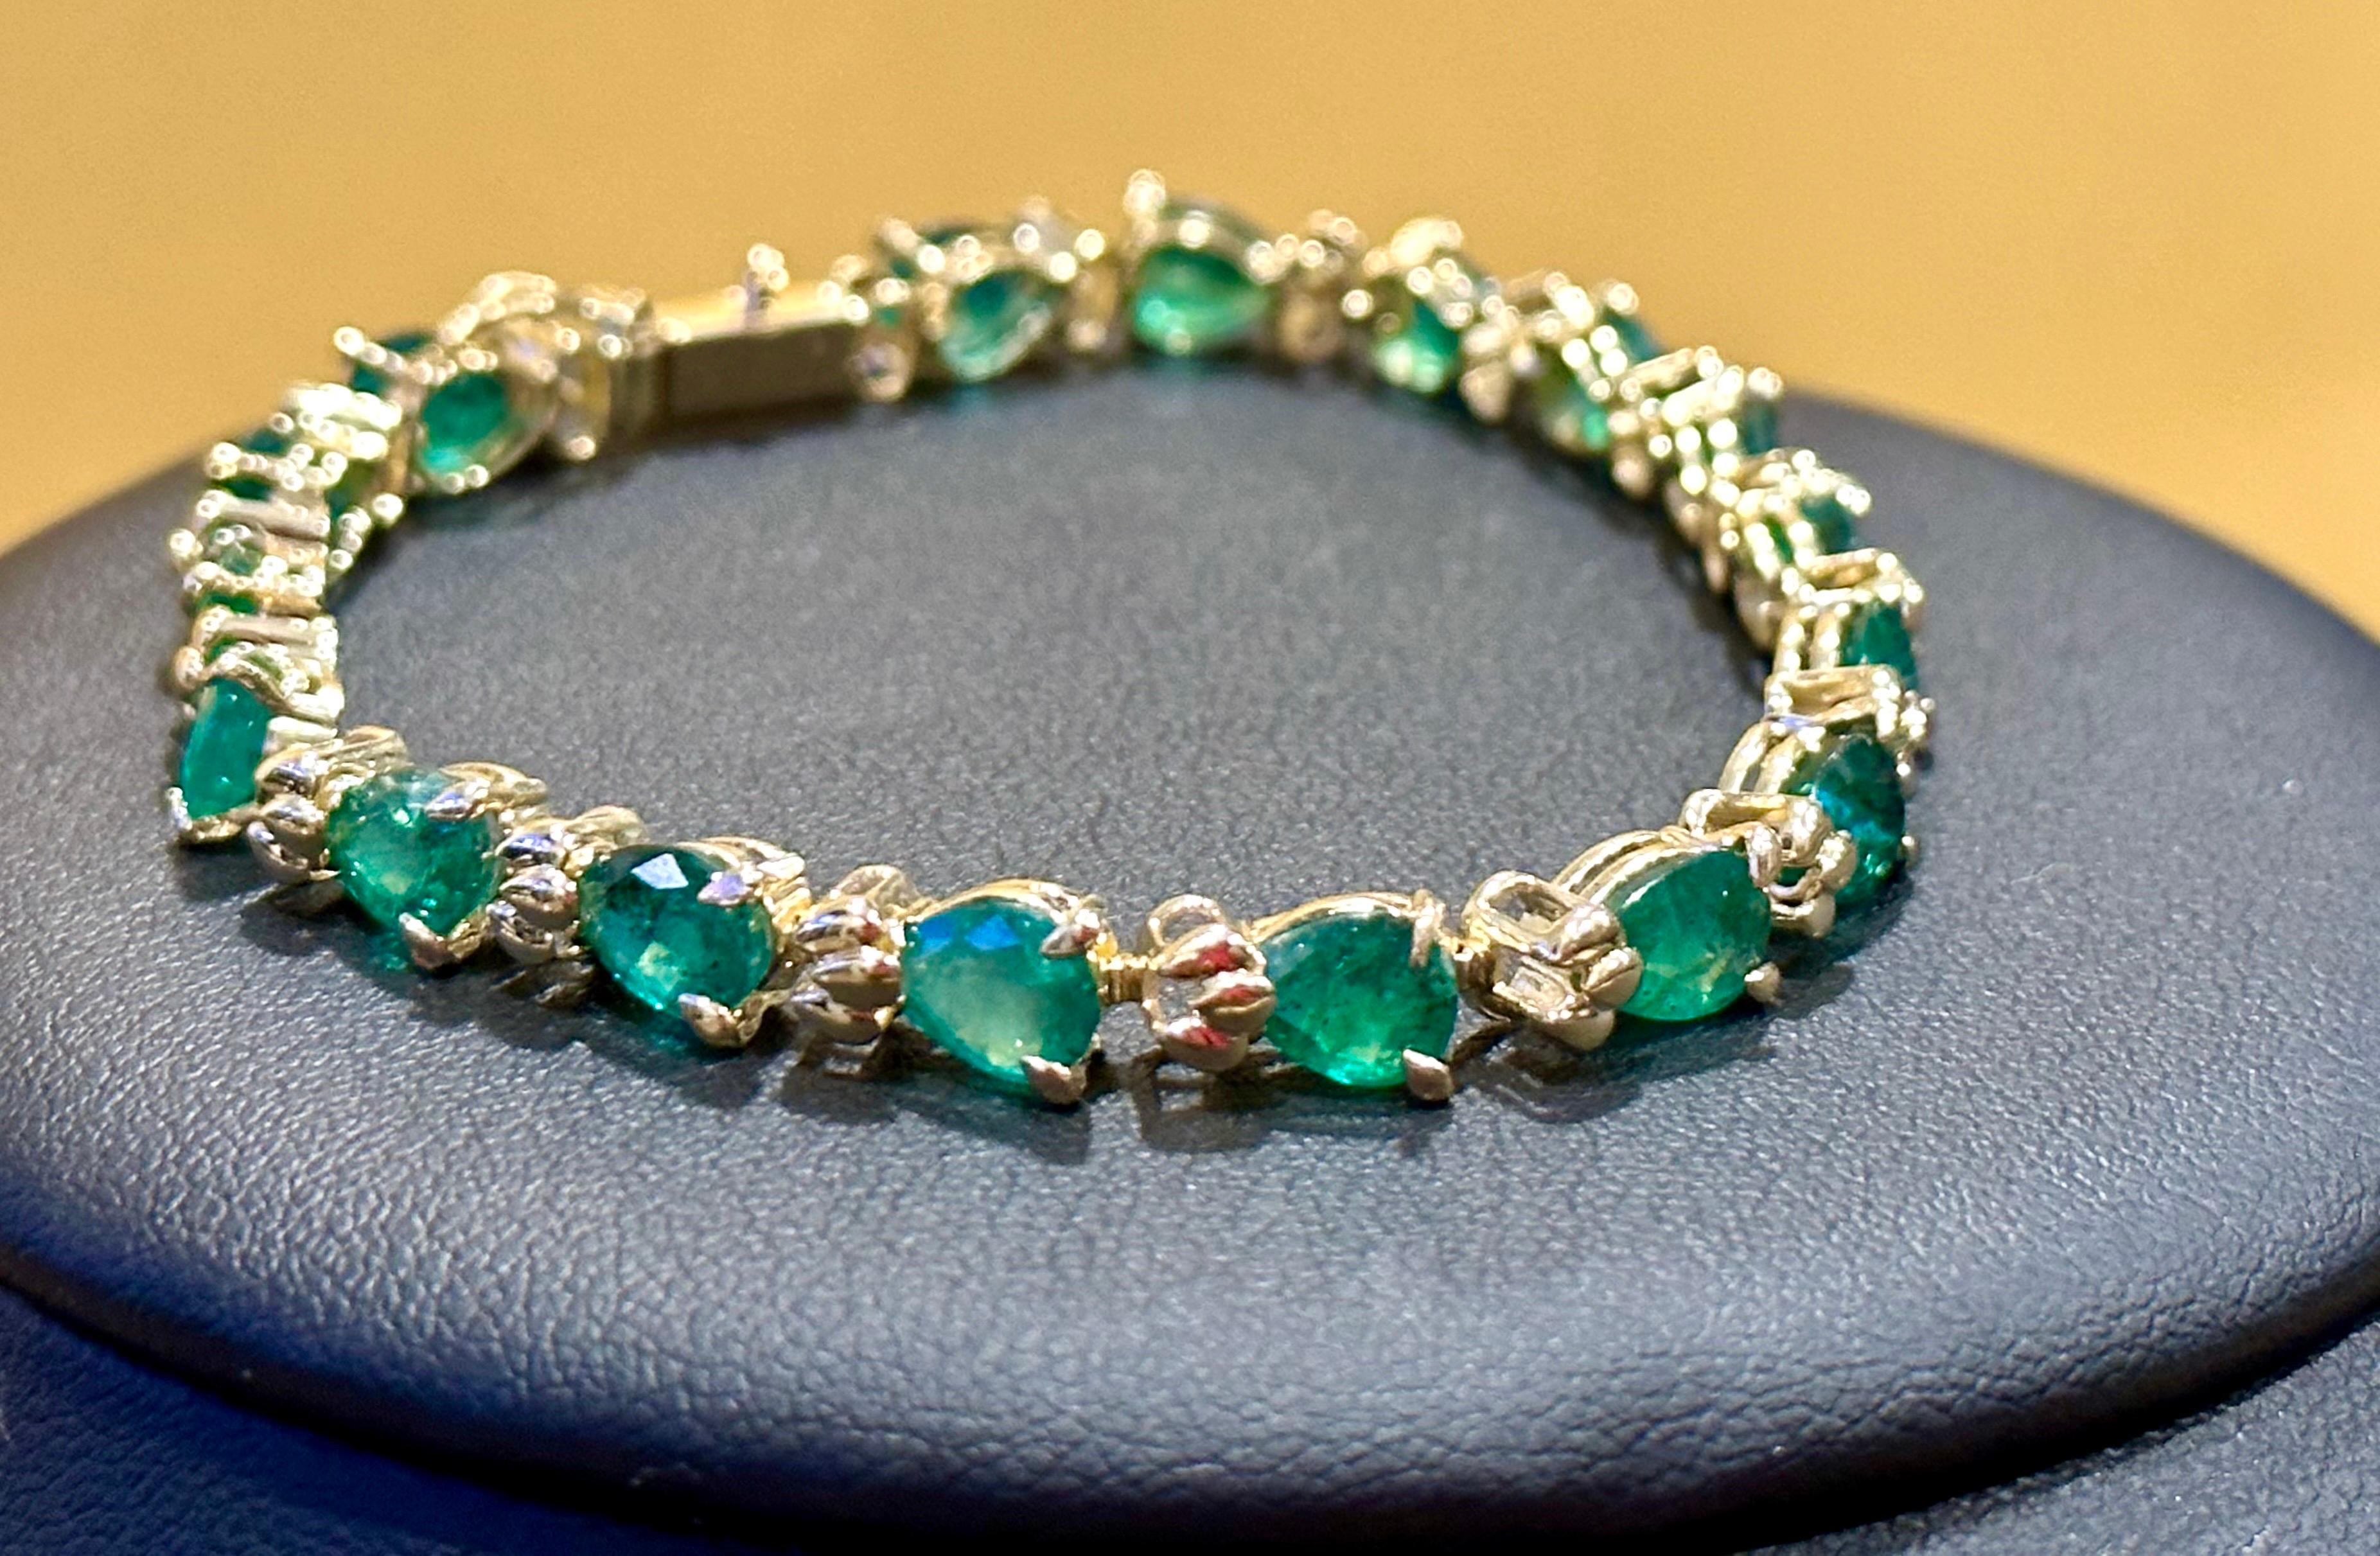  Dieses außergewöhnlich günstige Tennis  Armband hat  17 Steine in Birnenform  Smaragde  . Jeder Smaragd ist durch ein kleines goldenes Design voneinander getrennt. Das Gesamtgewicht der Smaragde beträgt  etwa 9 Karat. 
Das Armband ist fachmännisch